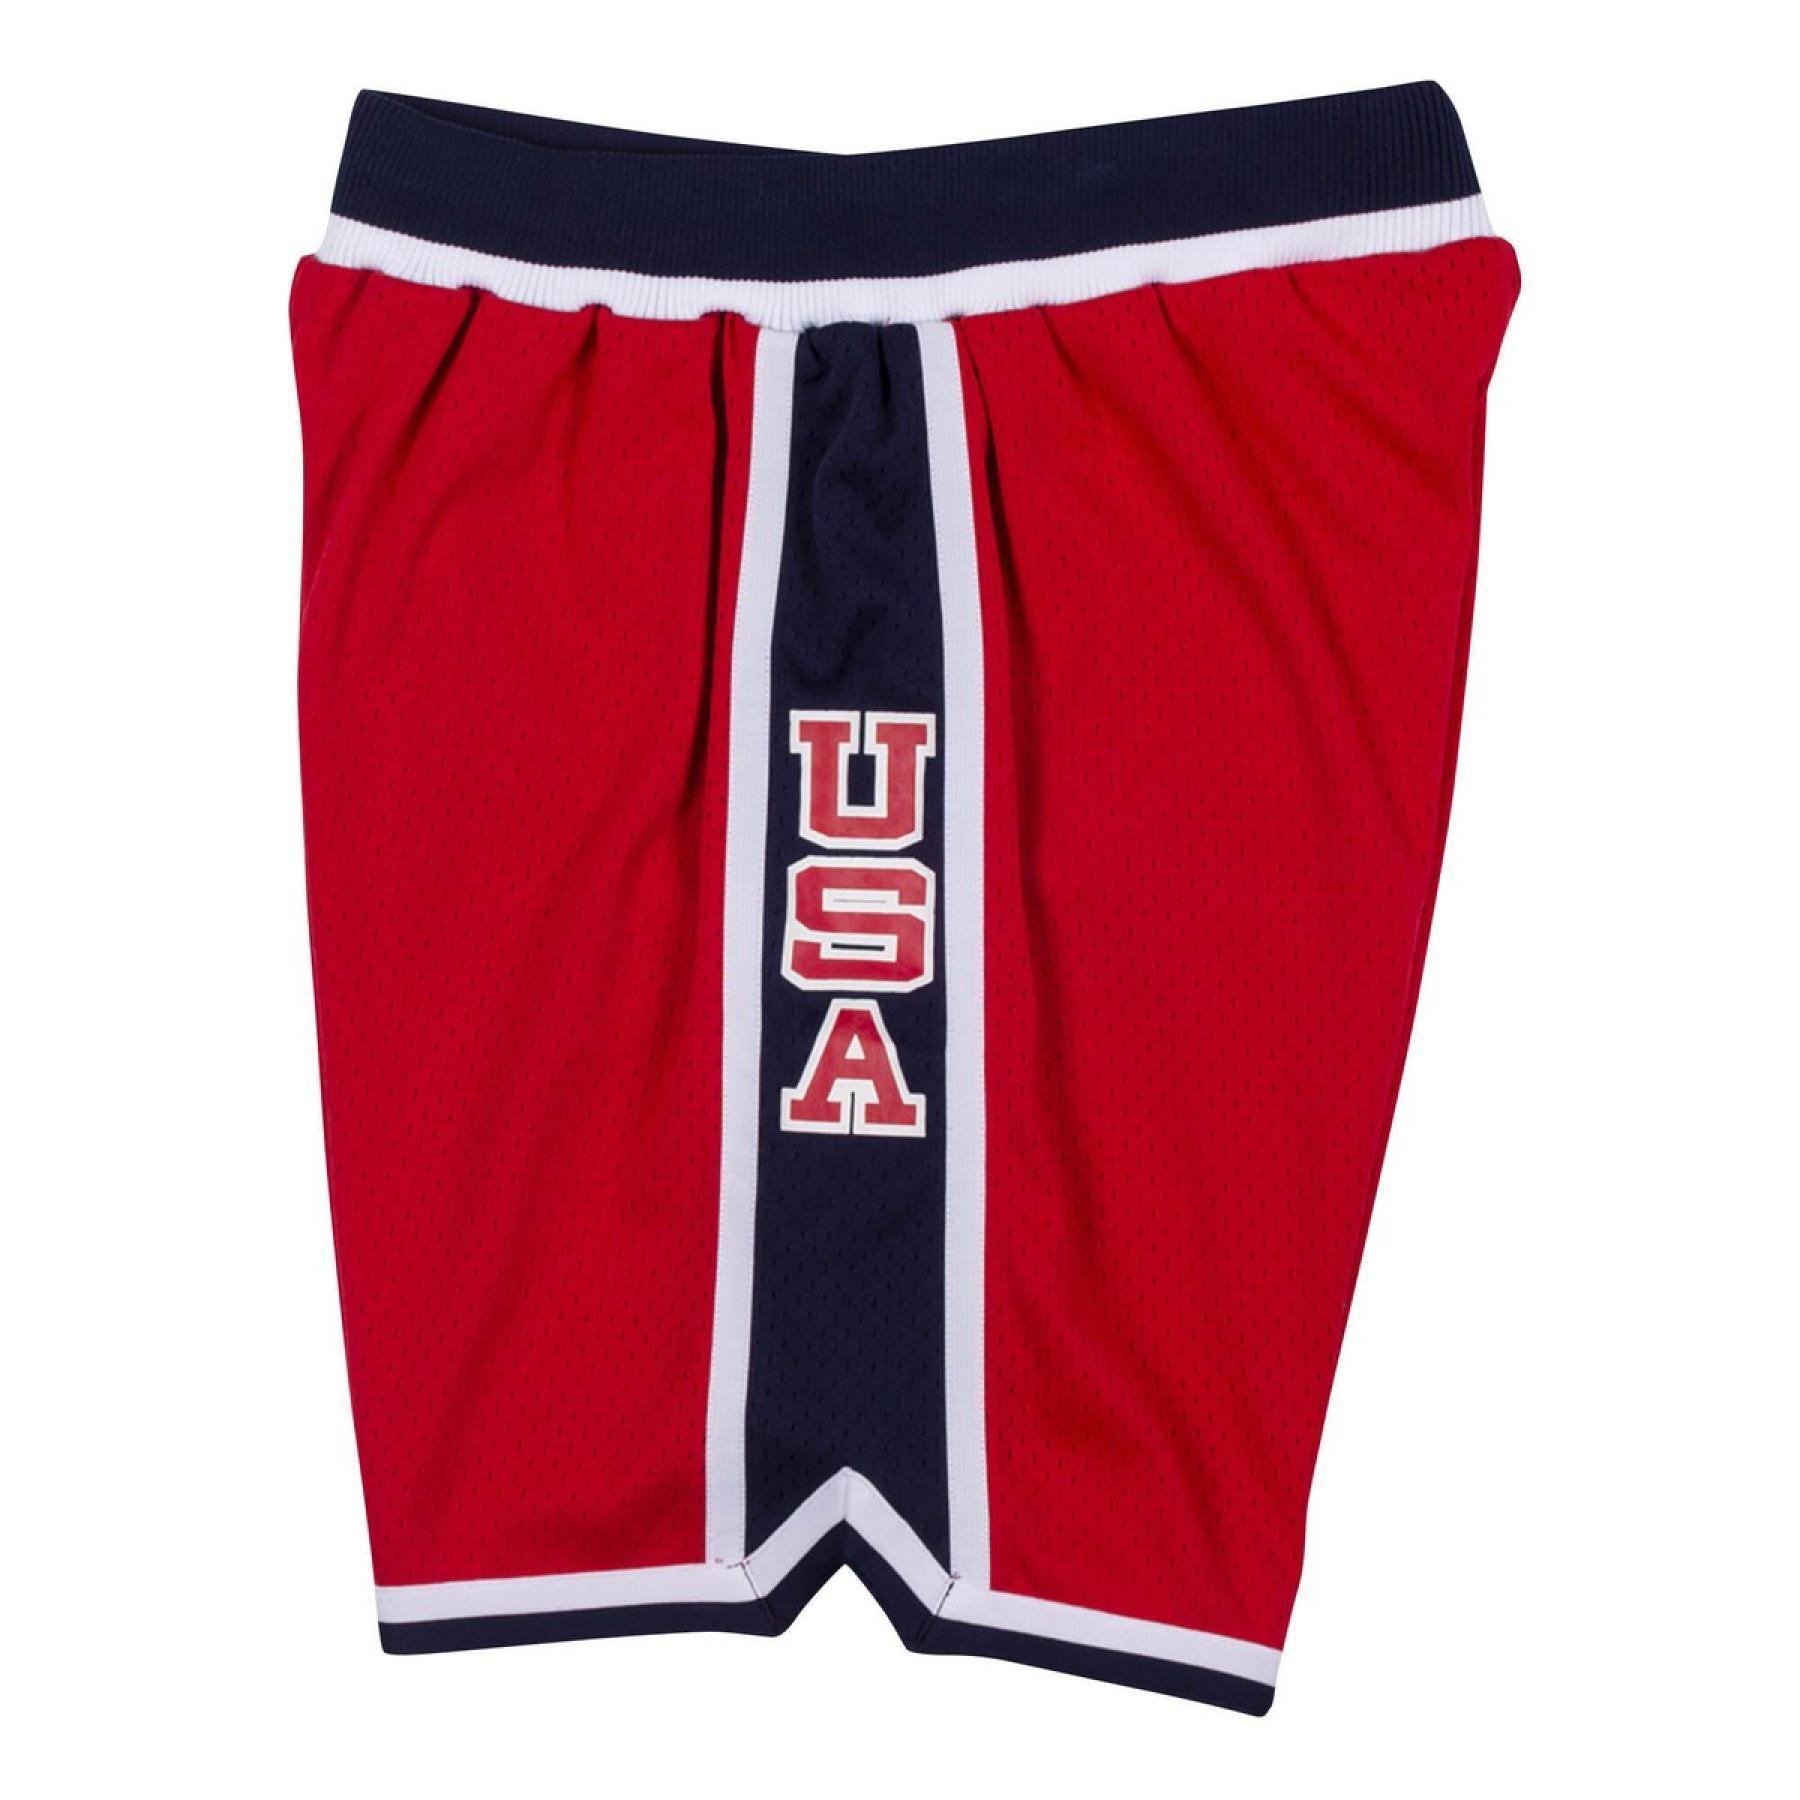 Autentiska shorts från laget USA alternate 1984